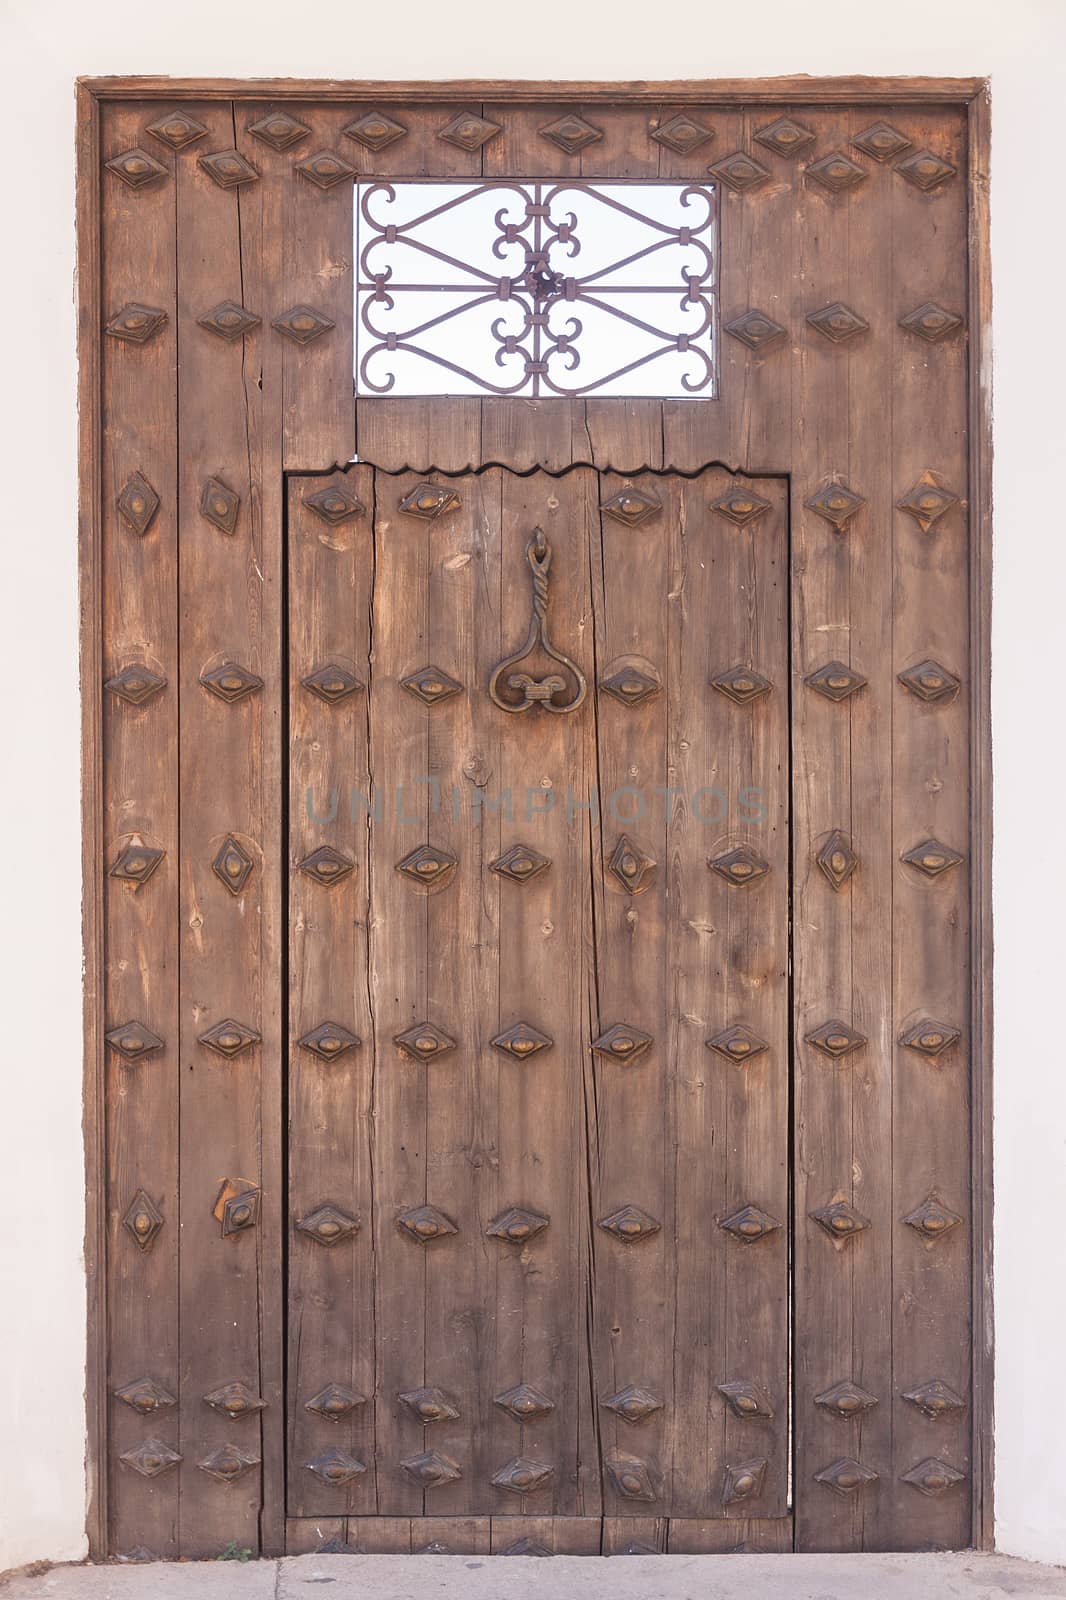 Old wooden door with metal knocker